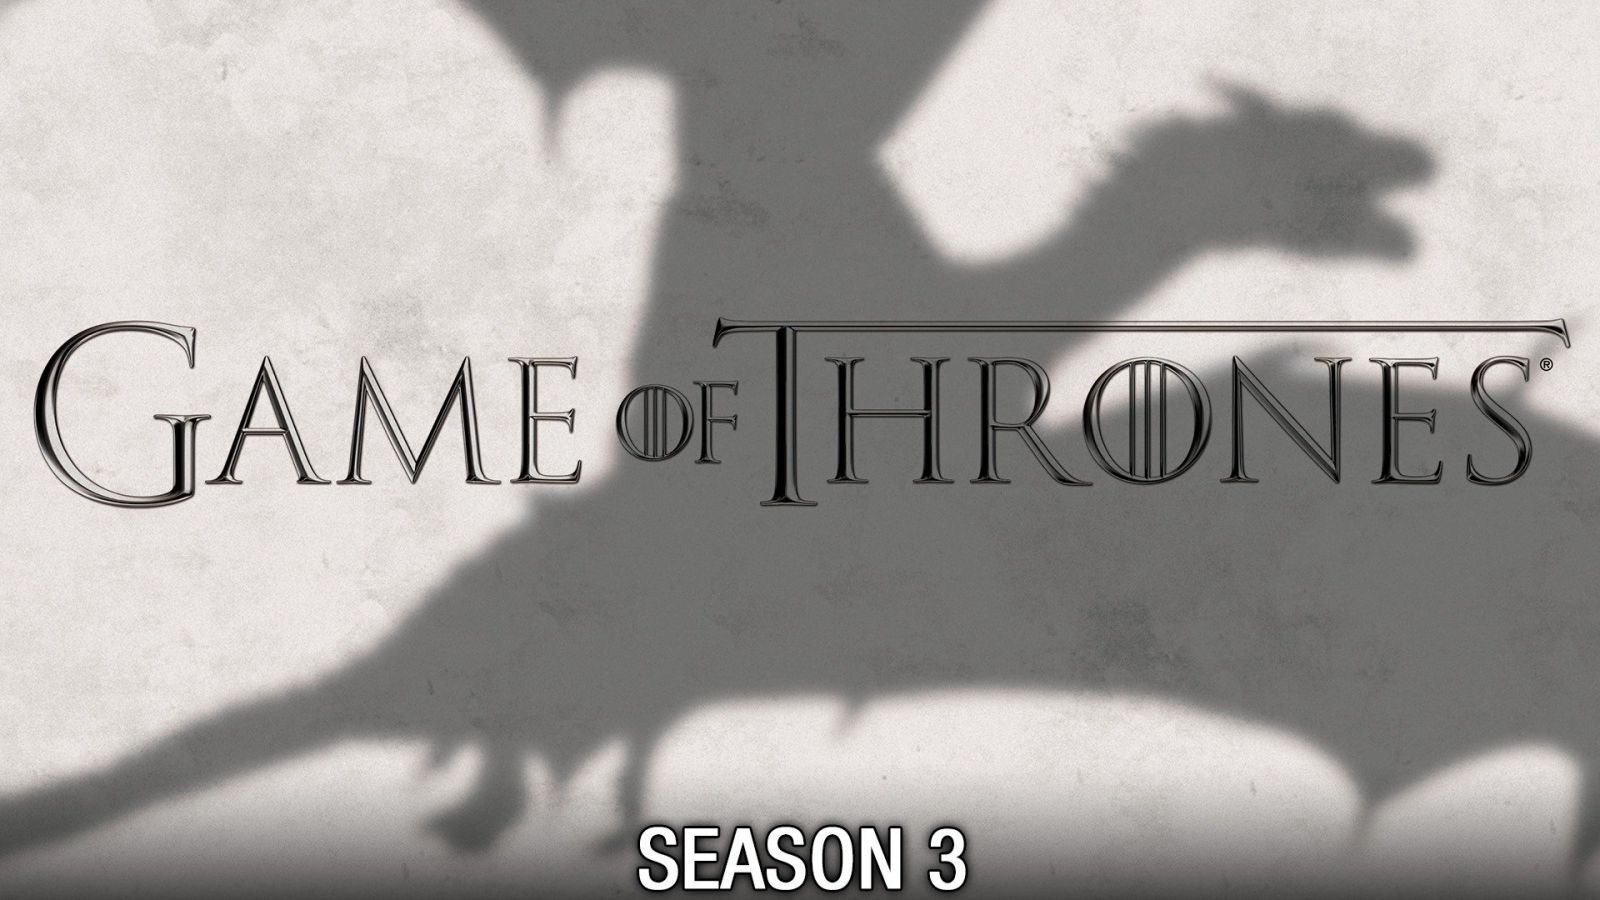 Trò chơi vương quyền (phần 3) - Game of thrones (season 3)